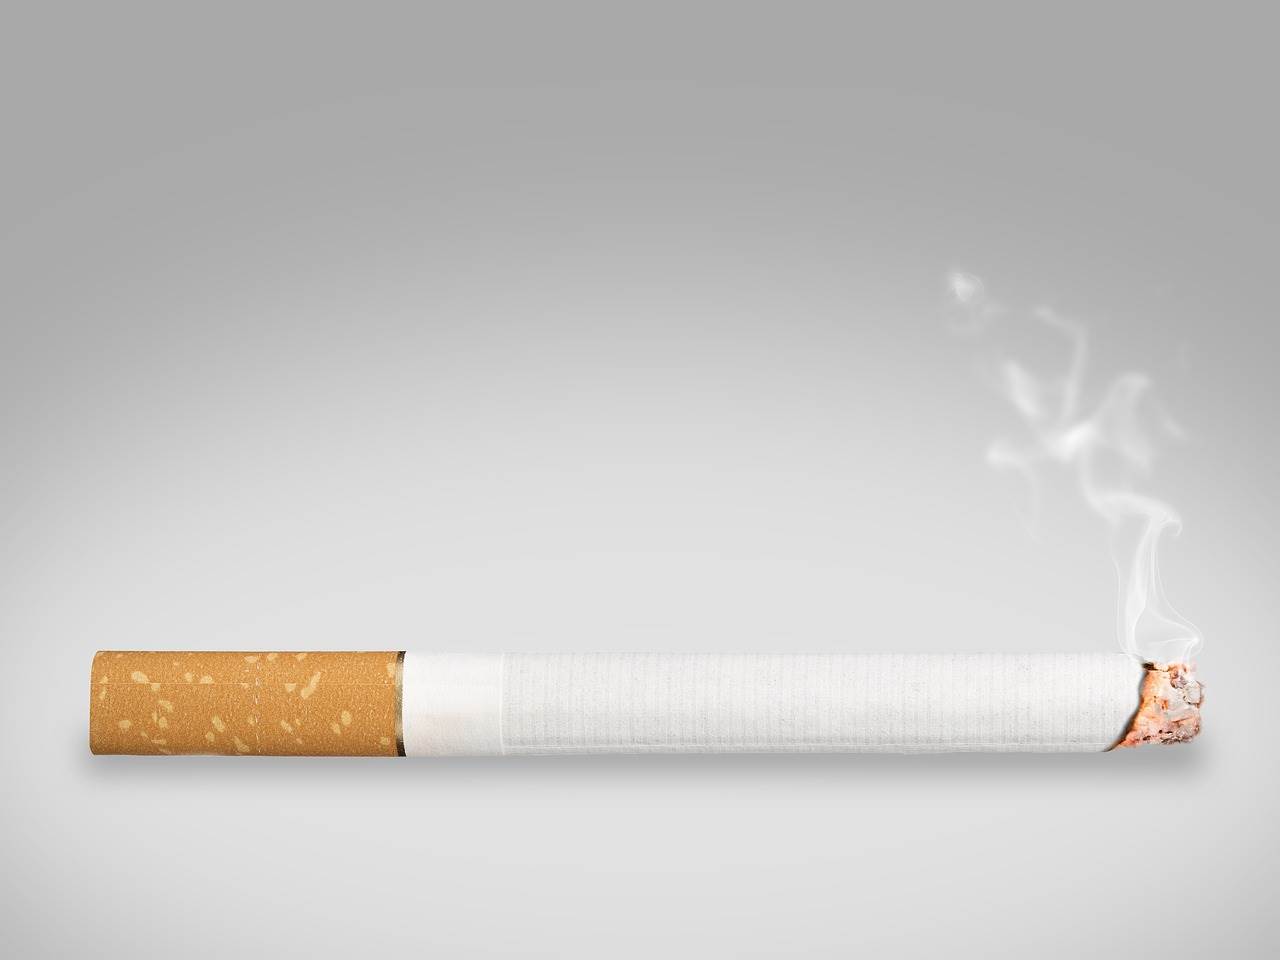 Comment la cigarette accélère le vieillissement de la peau ? Un aperçu des dangers du tabac pour la santé cutanée.